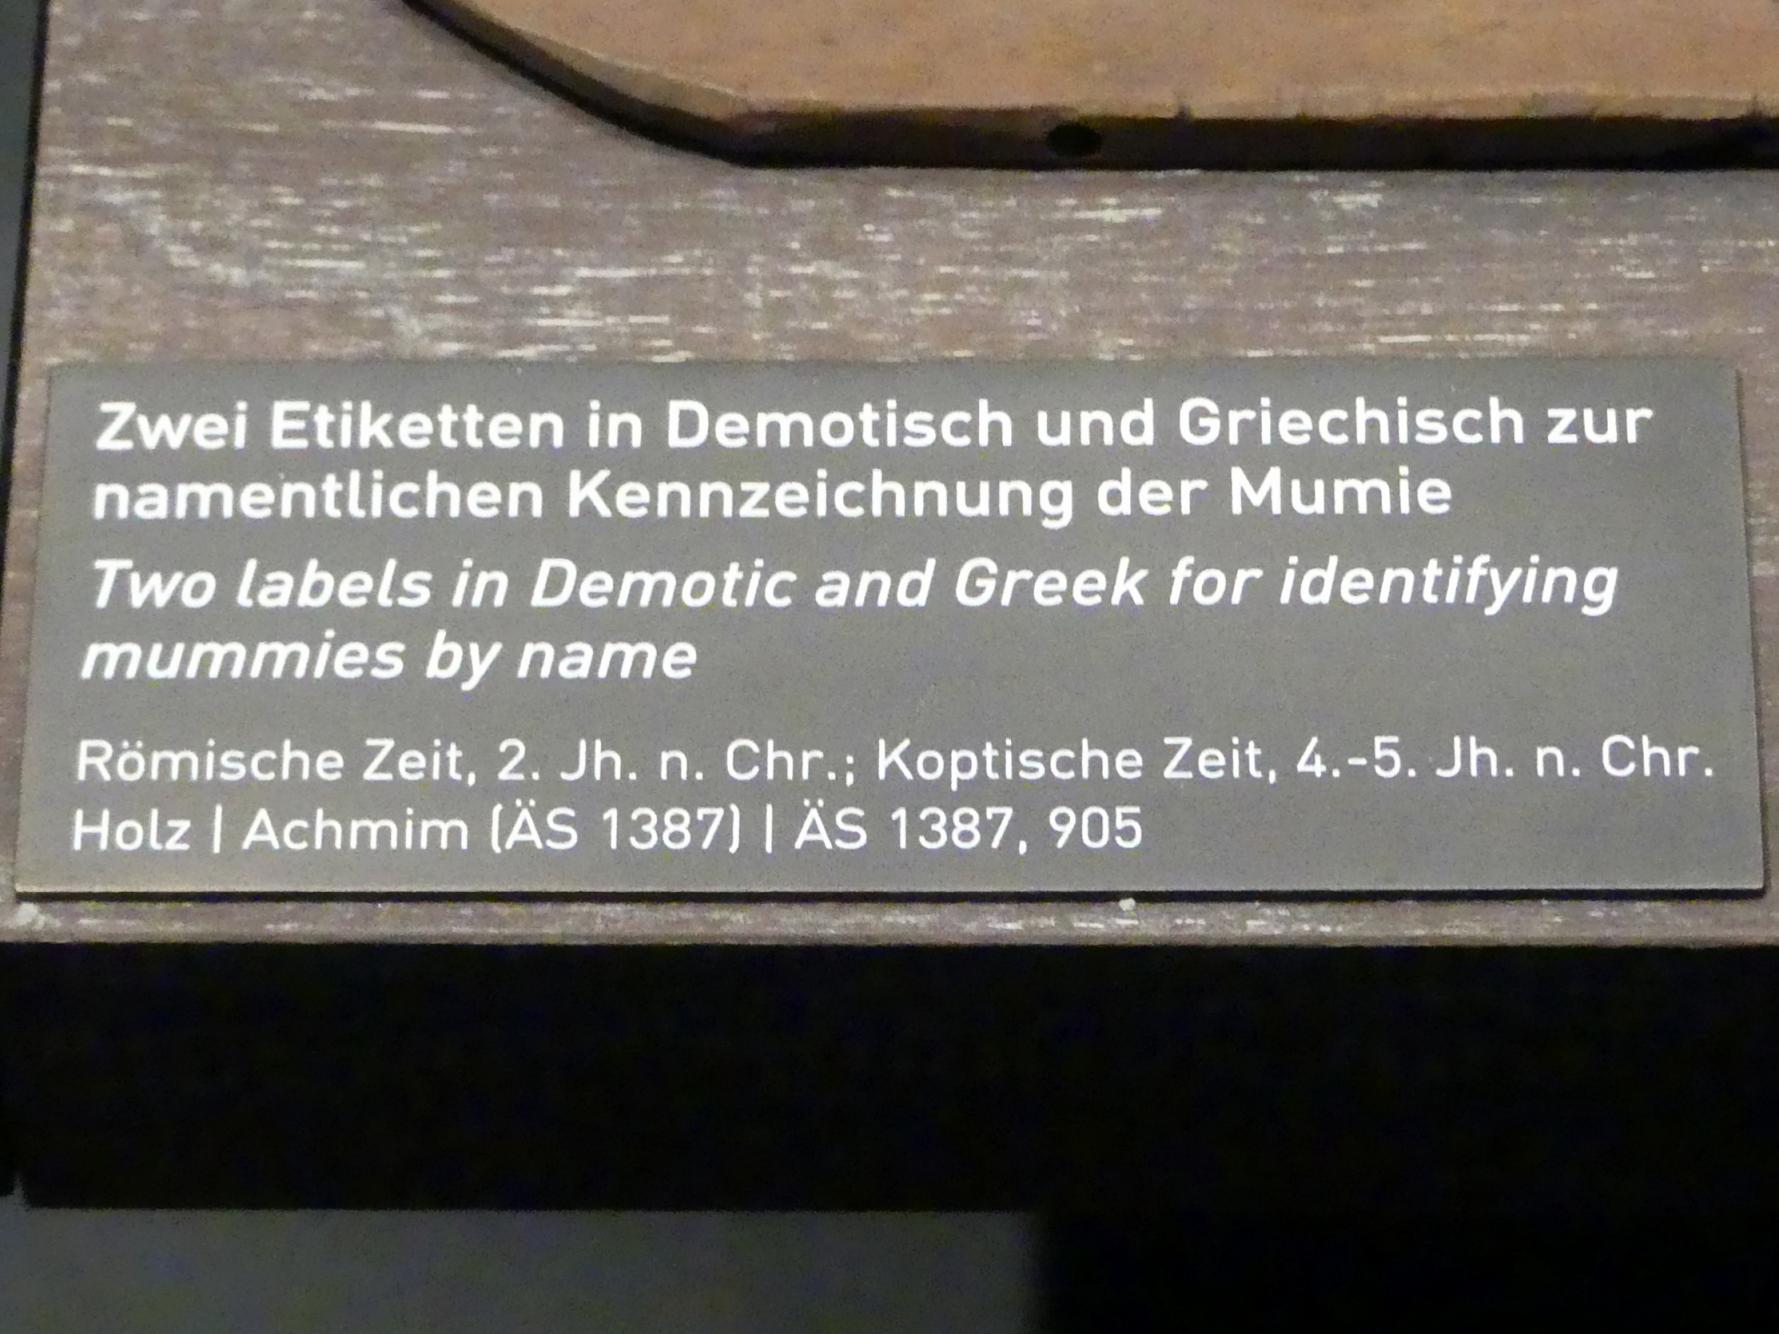 Etikette in Demotisch zur namentlichen Kennzeichnung einer Mumie, Römische Kaiserzeit, 27 v. Chr. - 54 n. Chr., 100 - 200, Bild 2/2